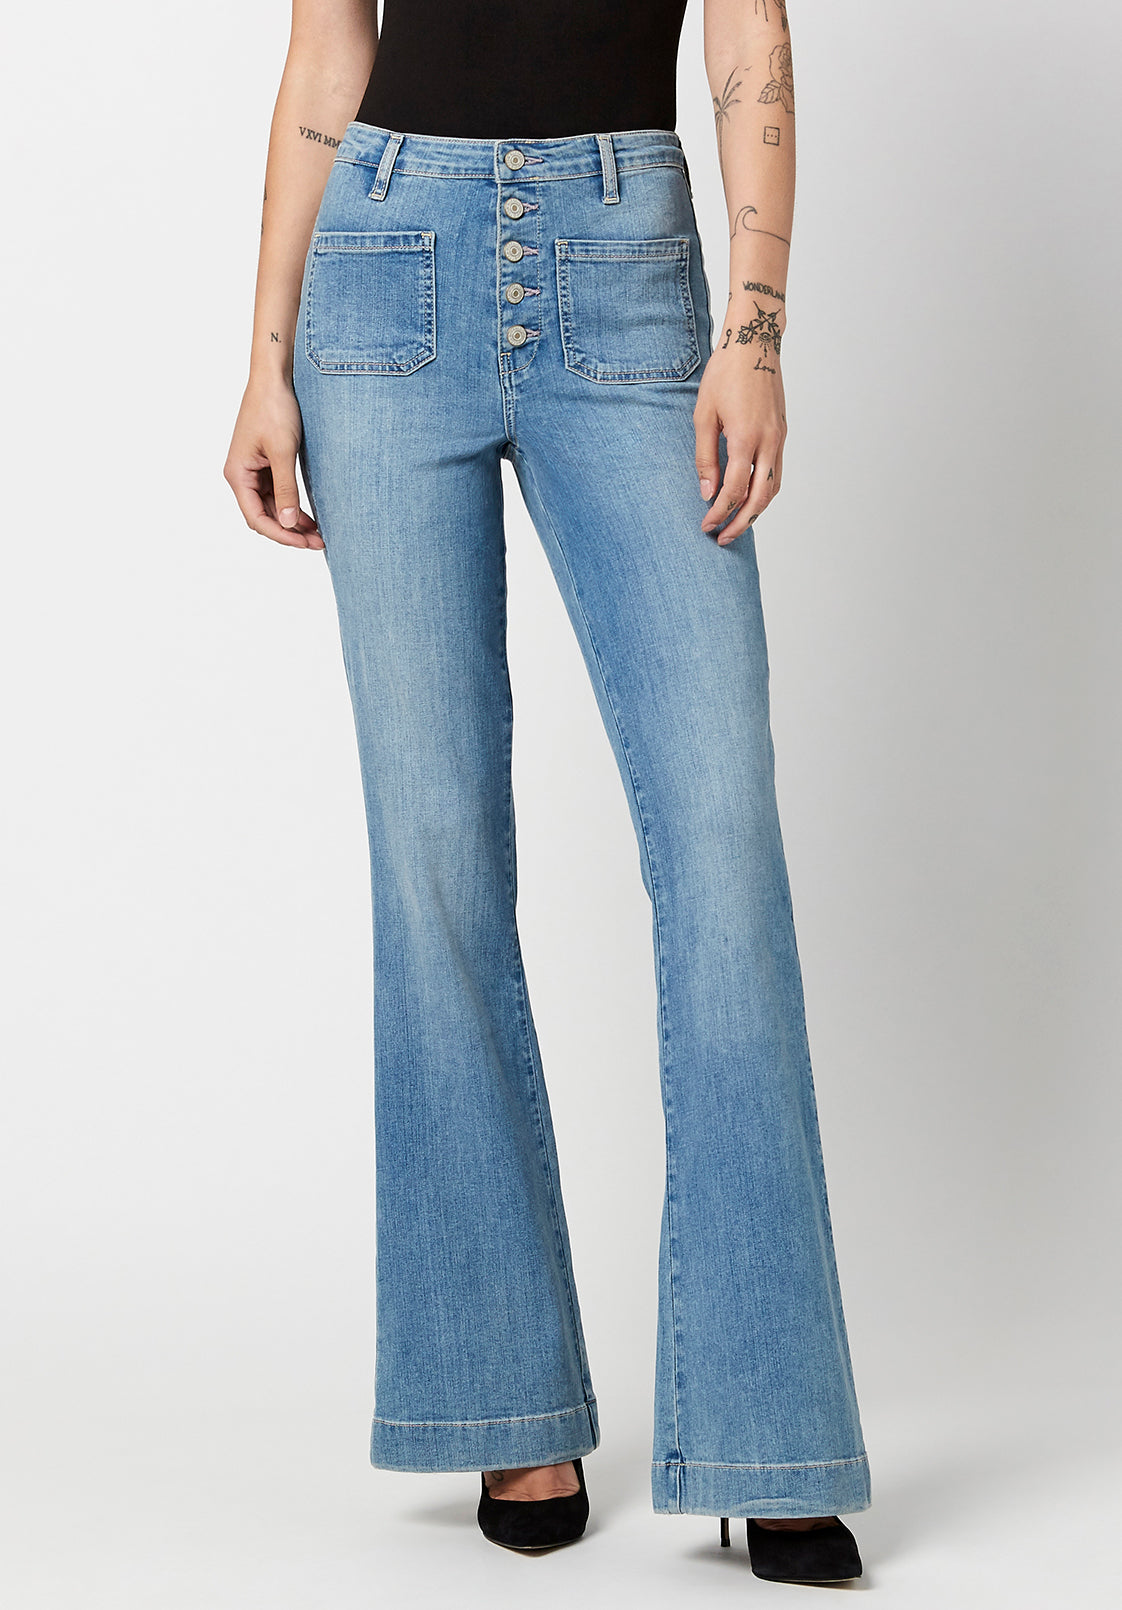 High Rise Flare Joplin Women's Jeans in Sanded Wash – Buffalo Jeans - US